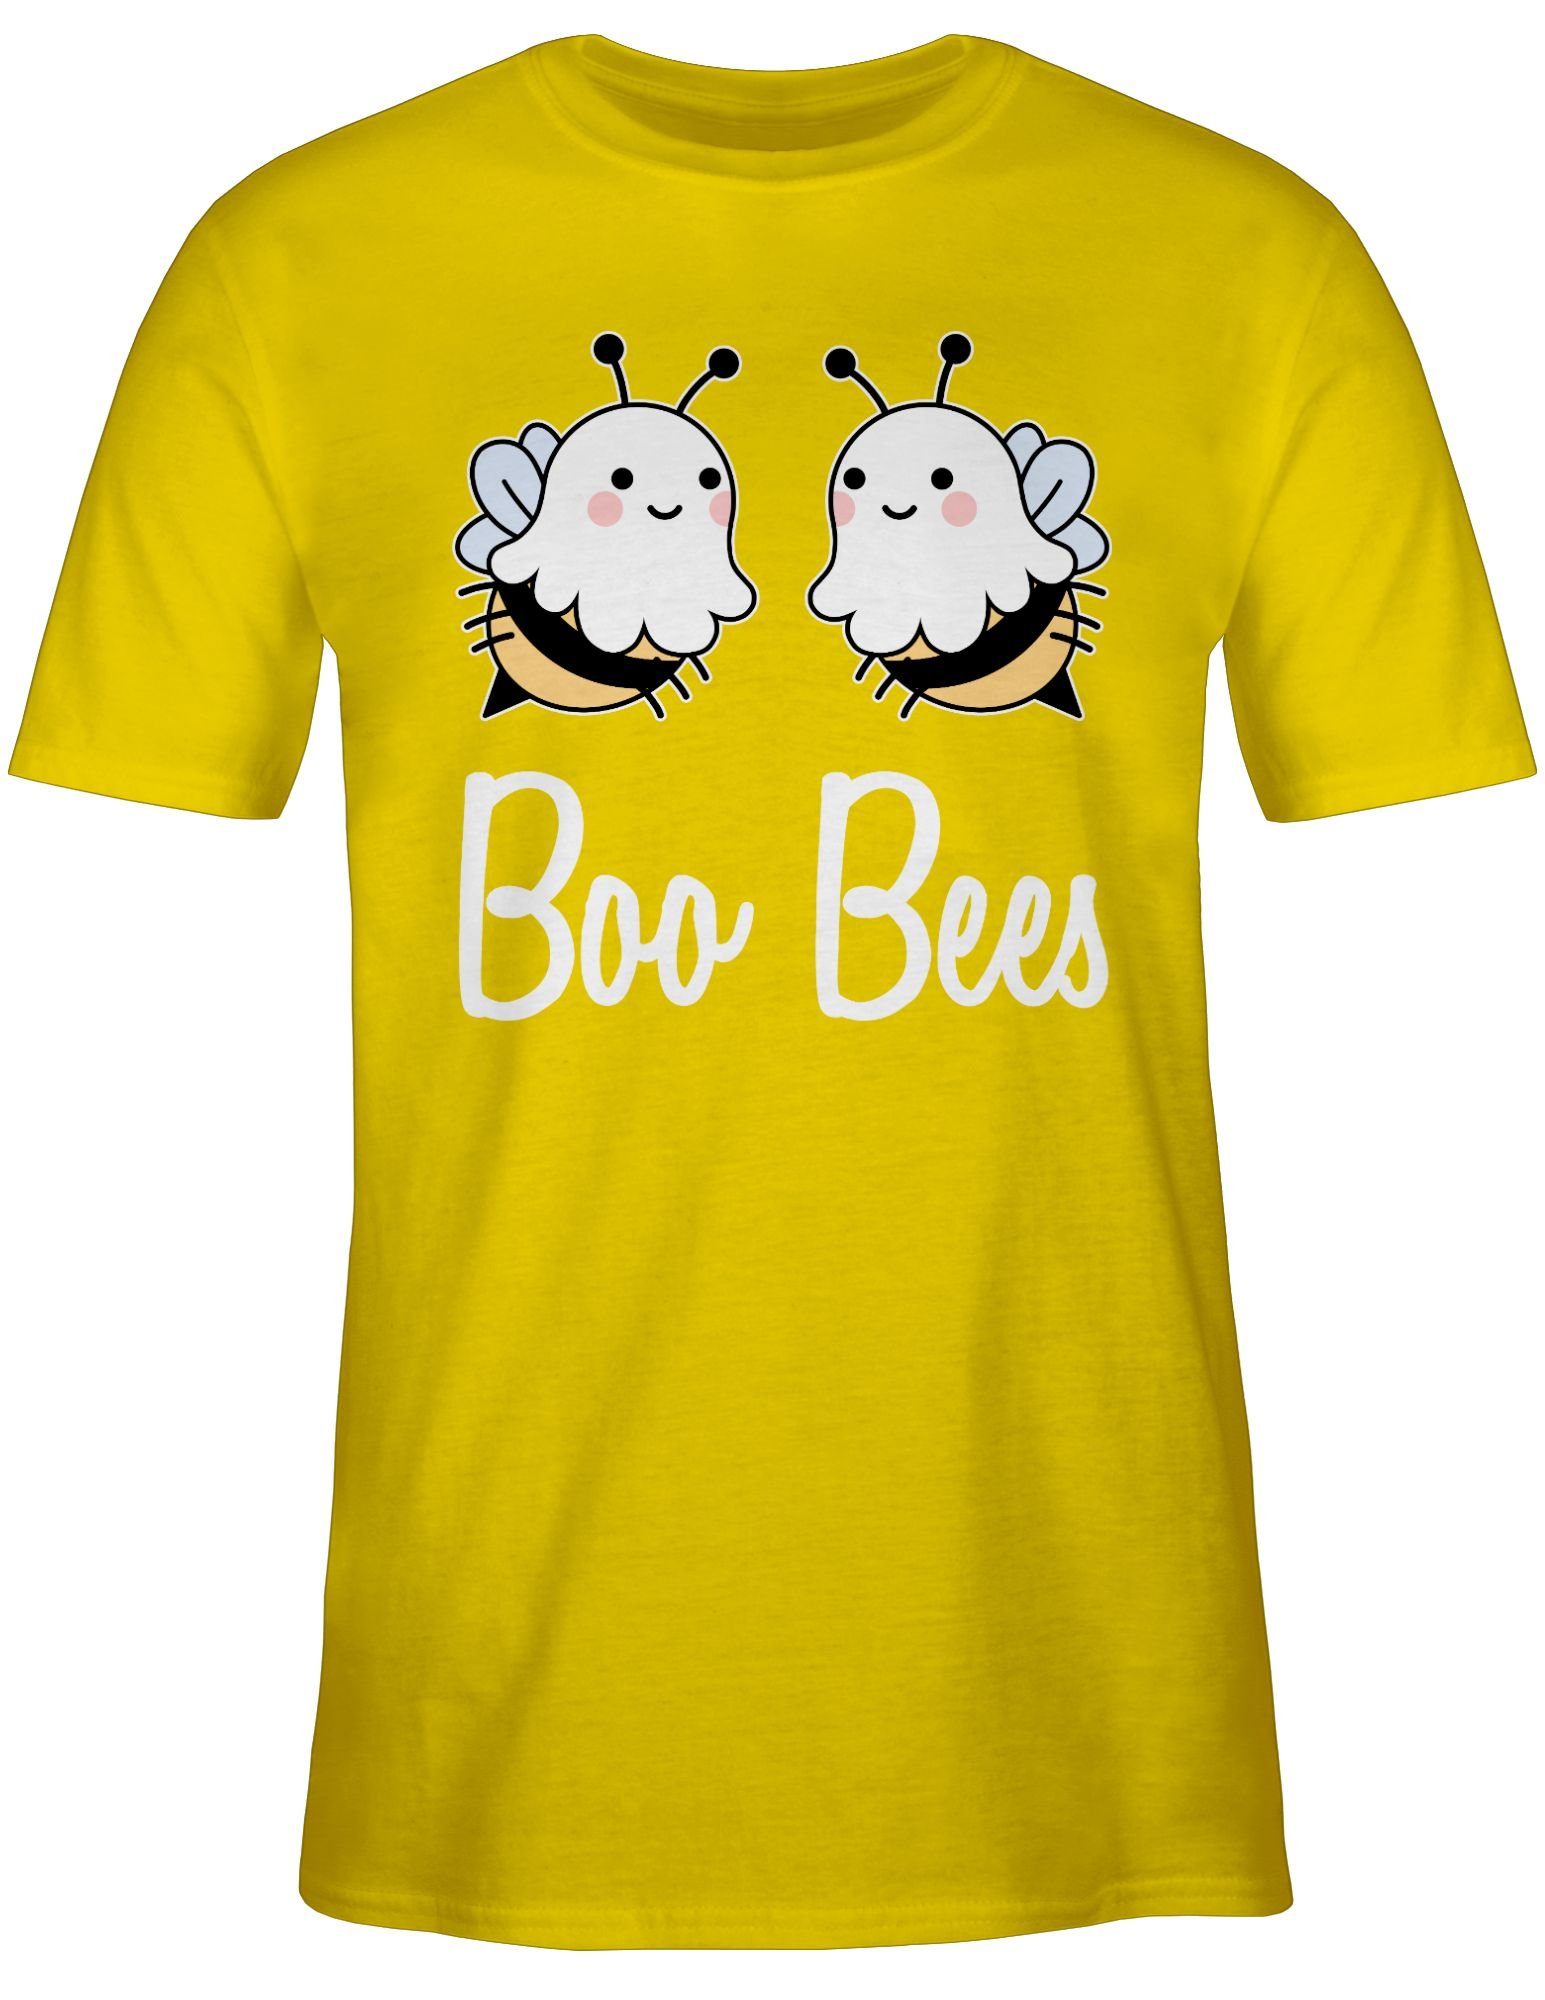 Shirtracer T-Shirt Boo Bees Boobs Halloween Kostüme Herren 3 Gelb